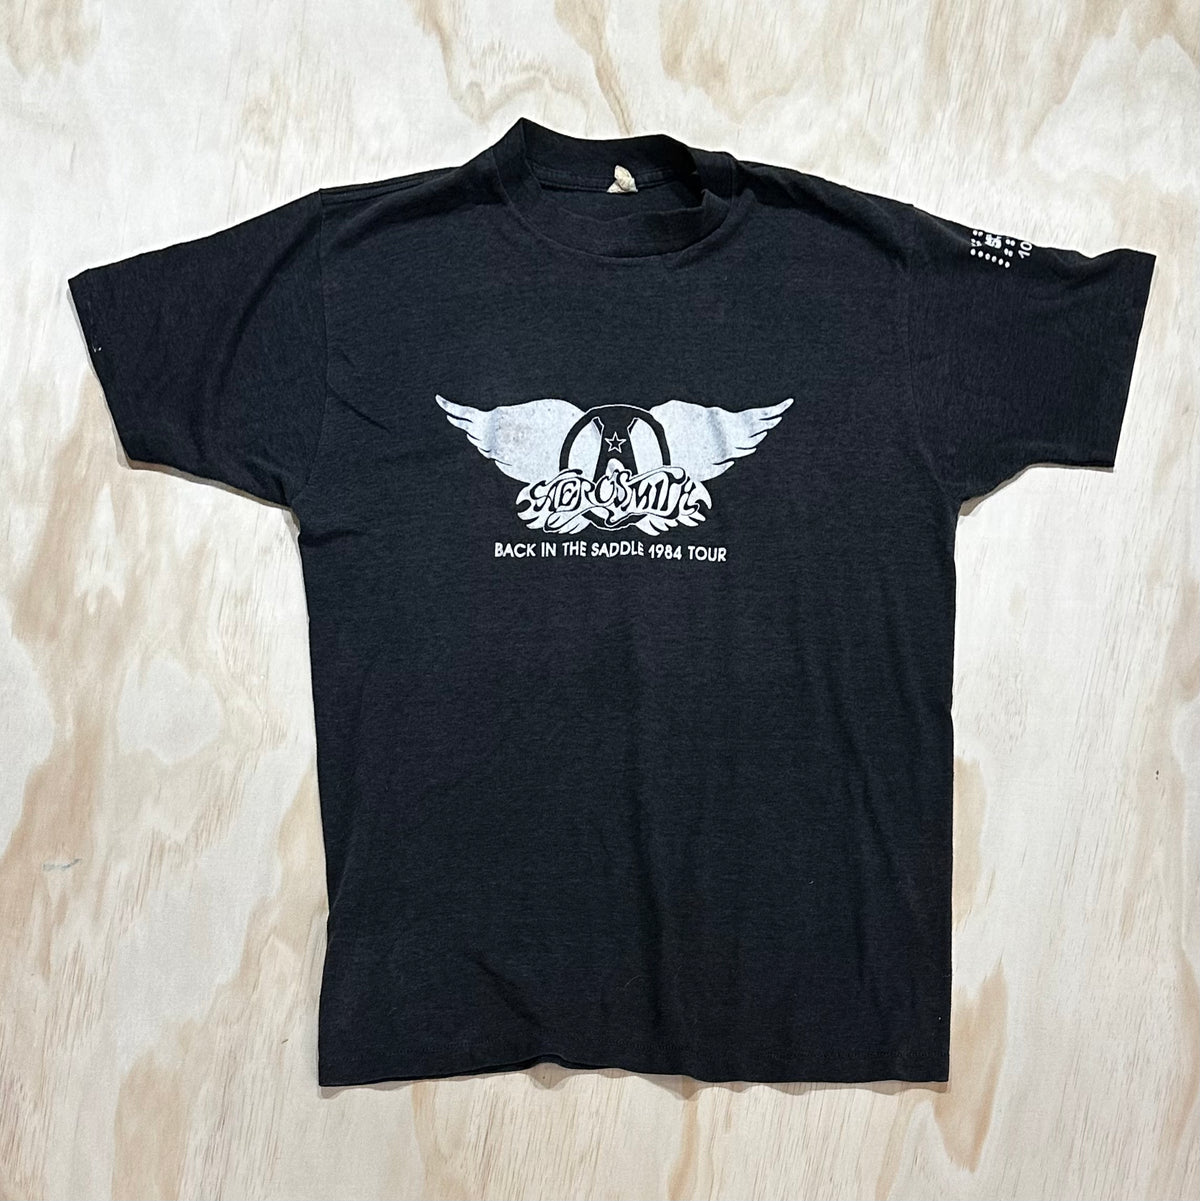 1986 Aerosmith Back In The Saddle 1984 Tour shirt